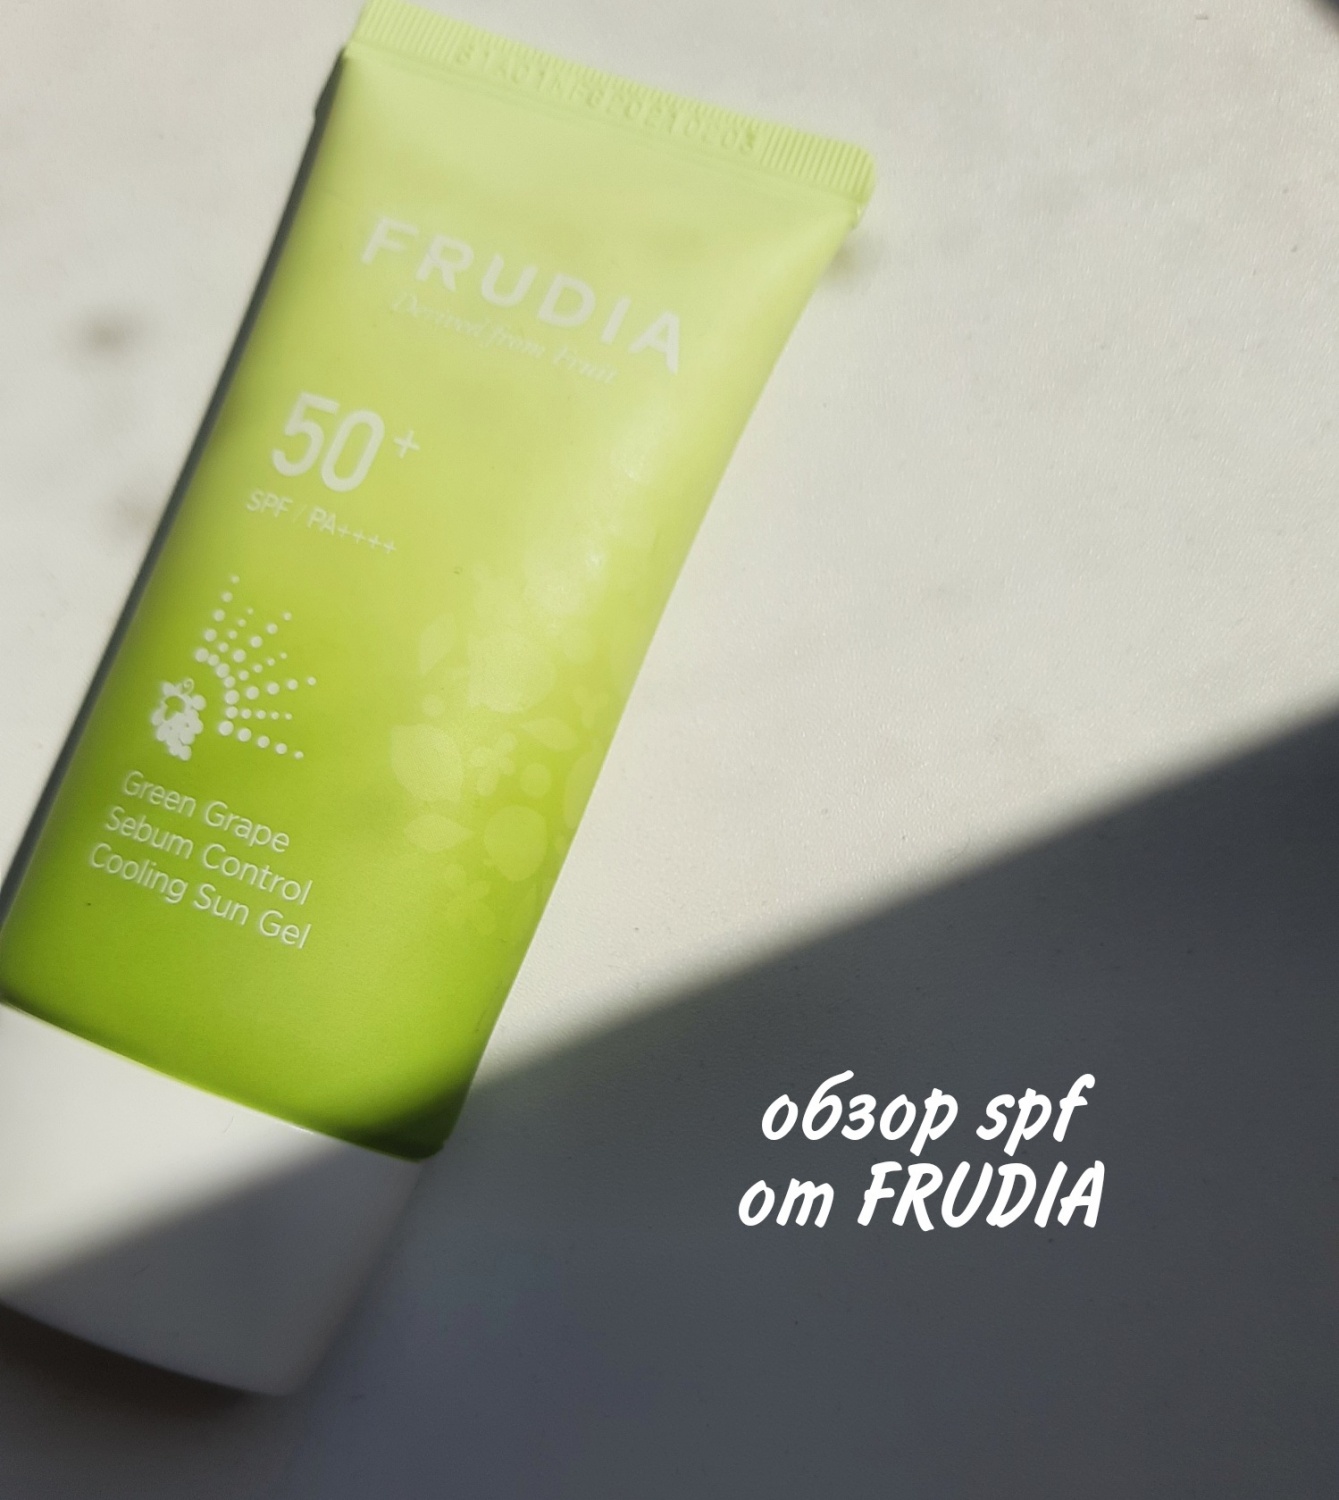 Солнцезащитный крем для лица  FRUDIA spf 50+ green grape sebum control  фото